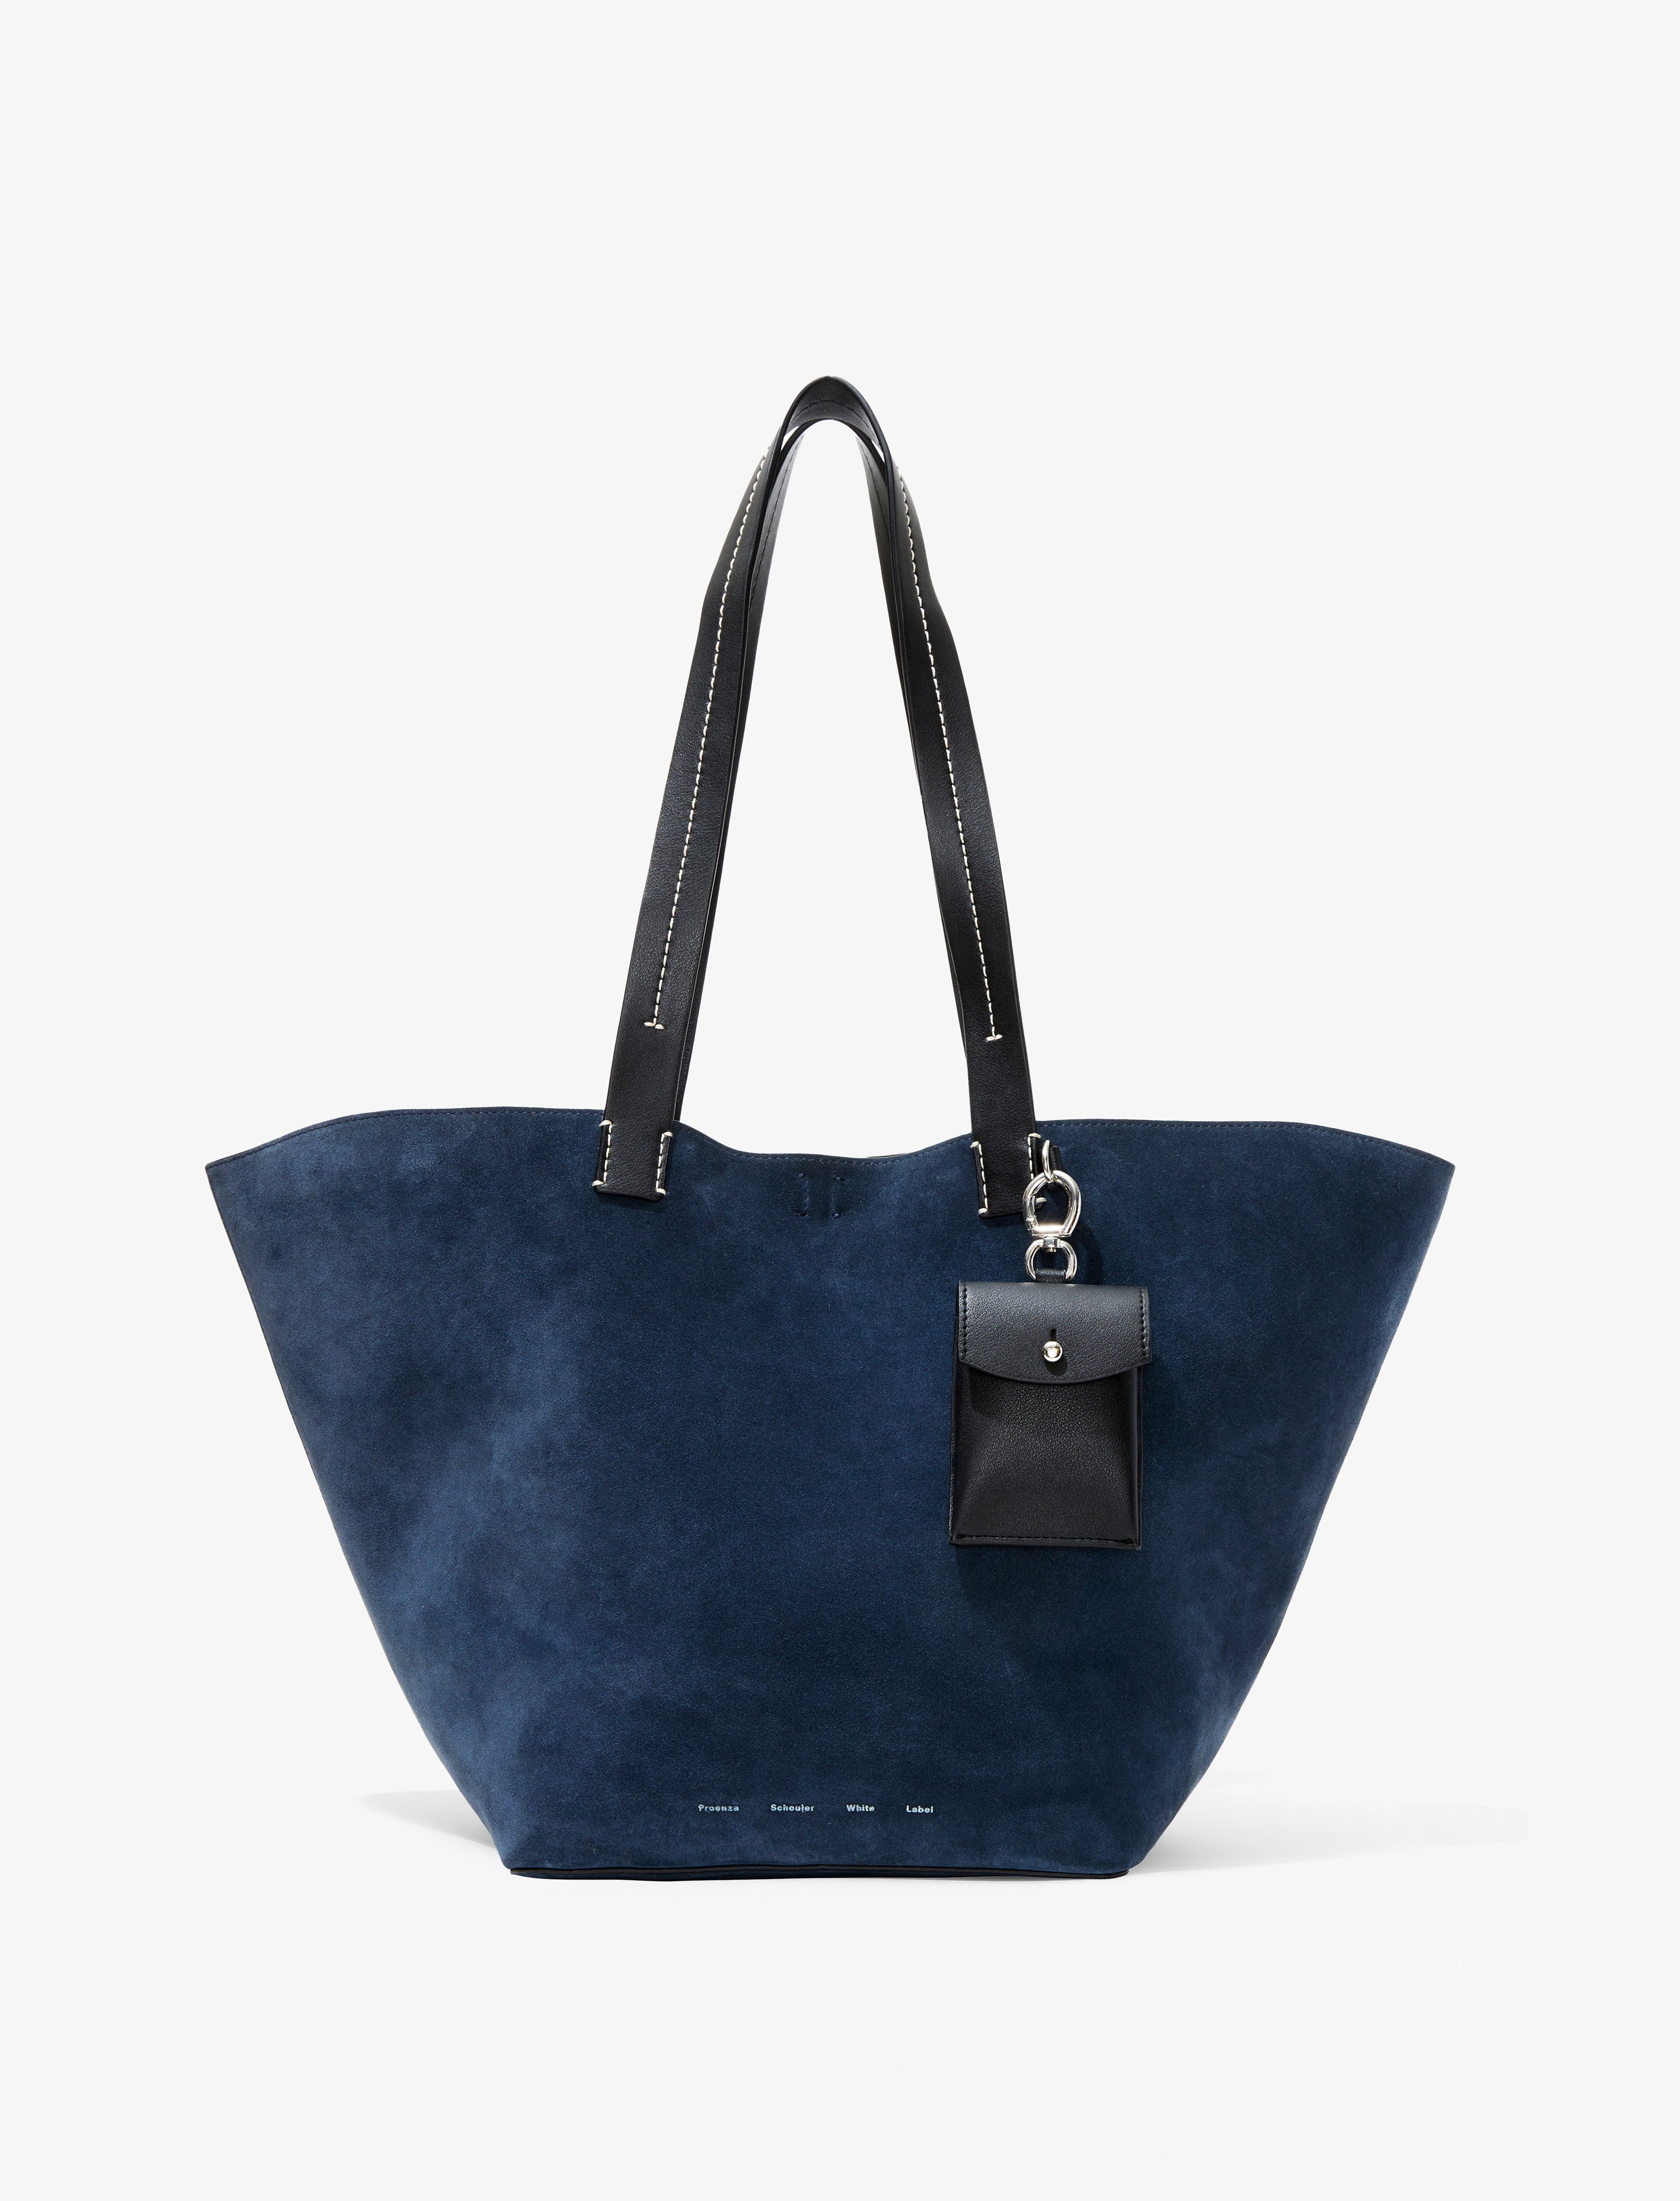 Shop White Label Bags | Proenza Schouler - Official Site